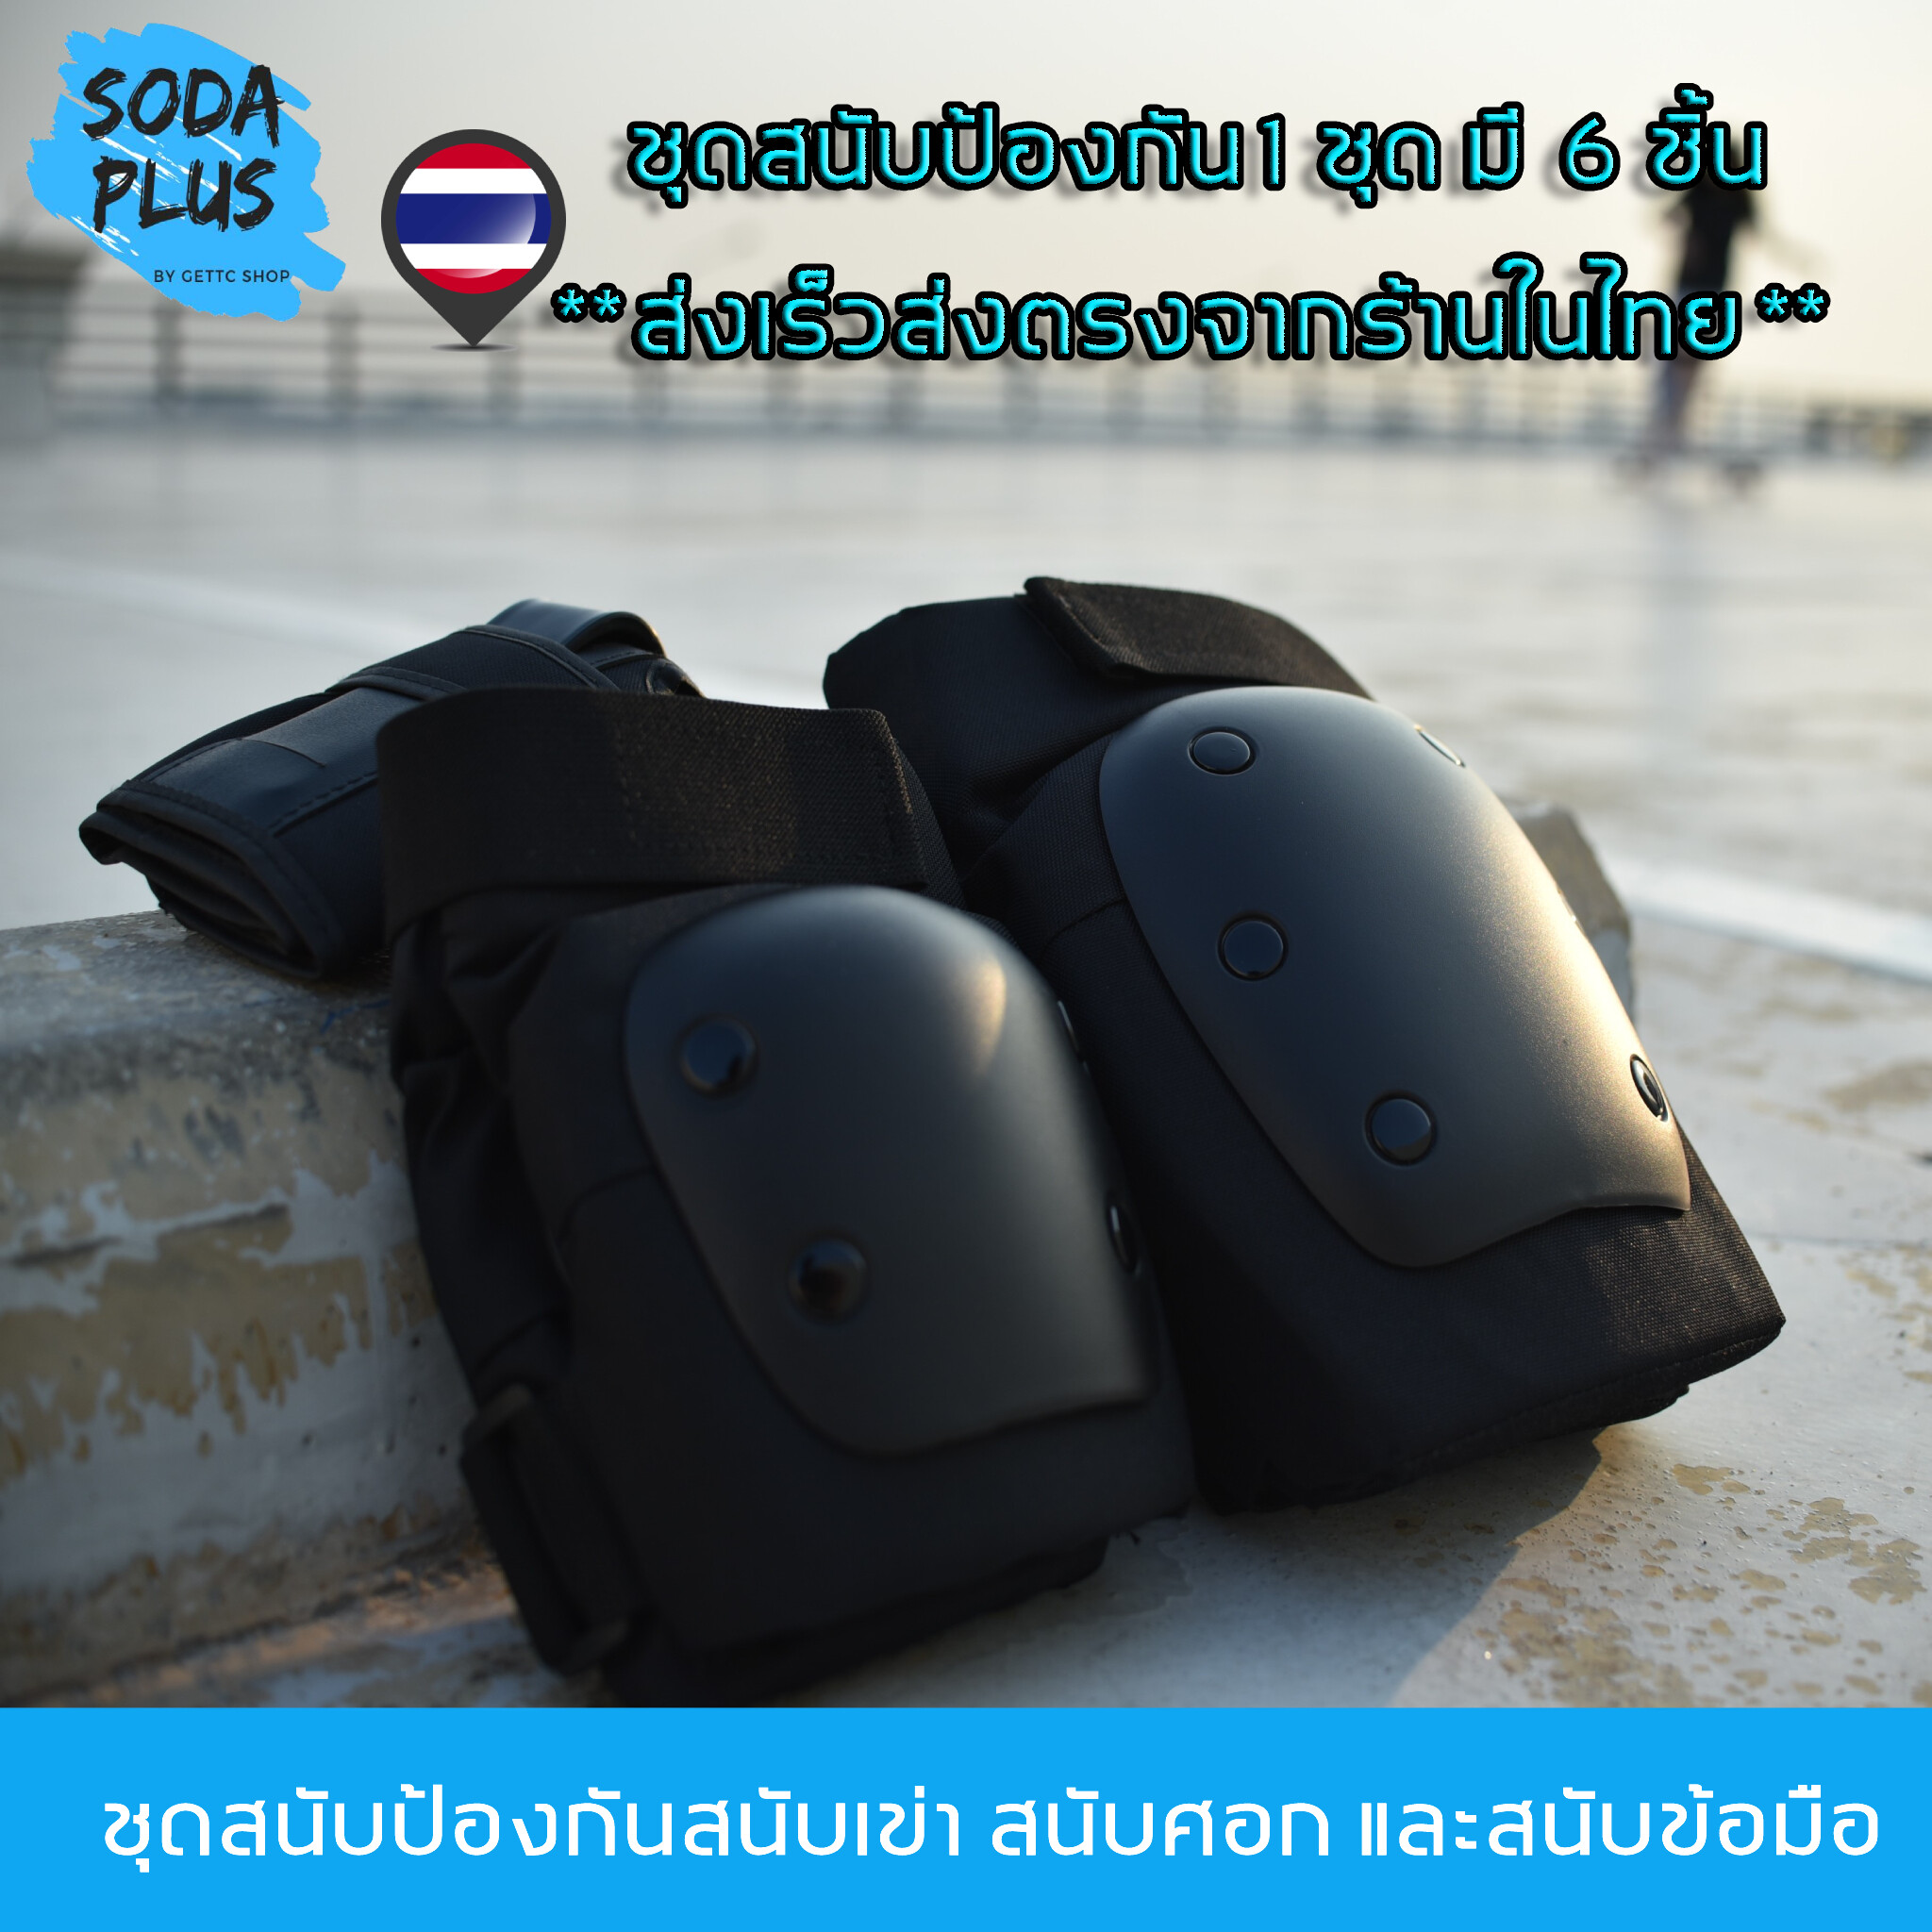 [พร้อมส่งจากไทย] ชุดอุปกรณ์ป้องกัน สนับเข่า ศอก และข้อมือ สำหรับ surfskate,rollerskates,skateboard